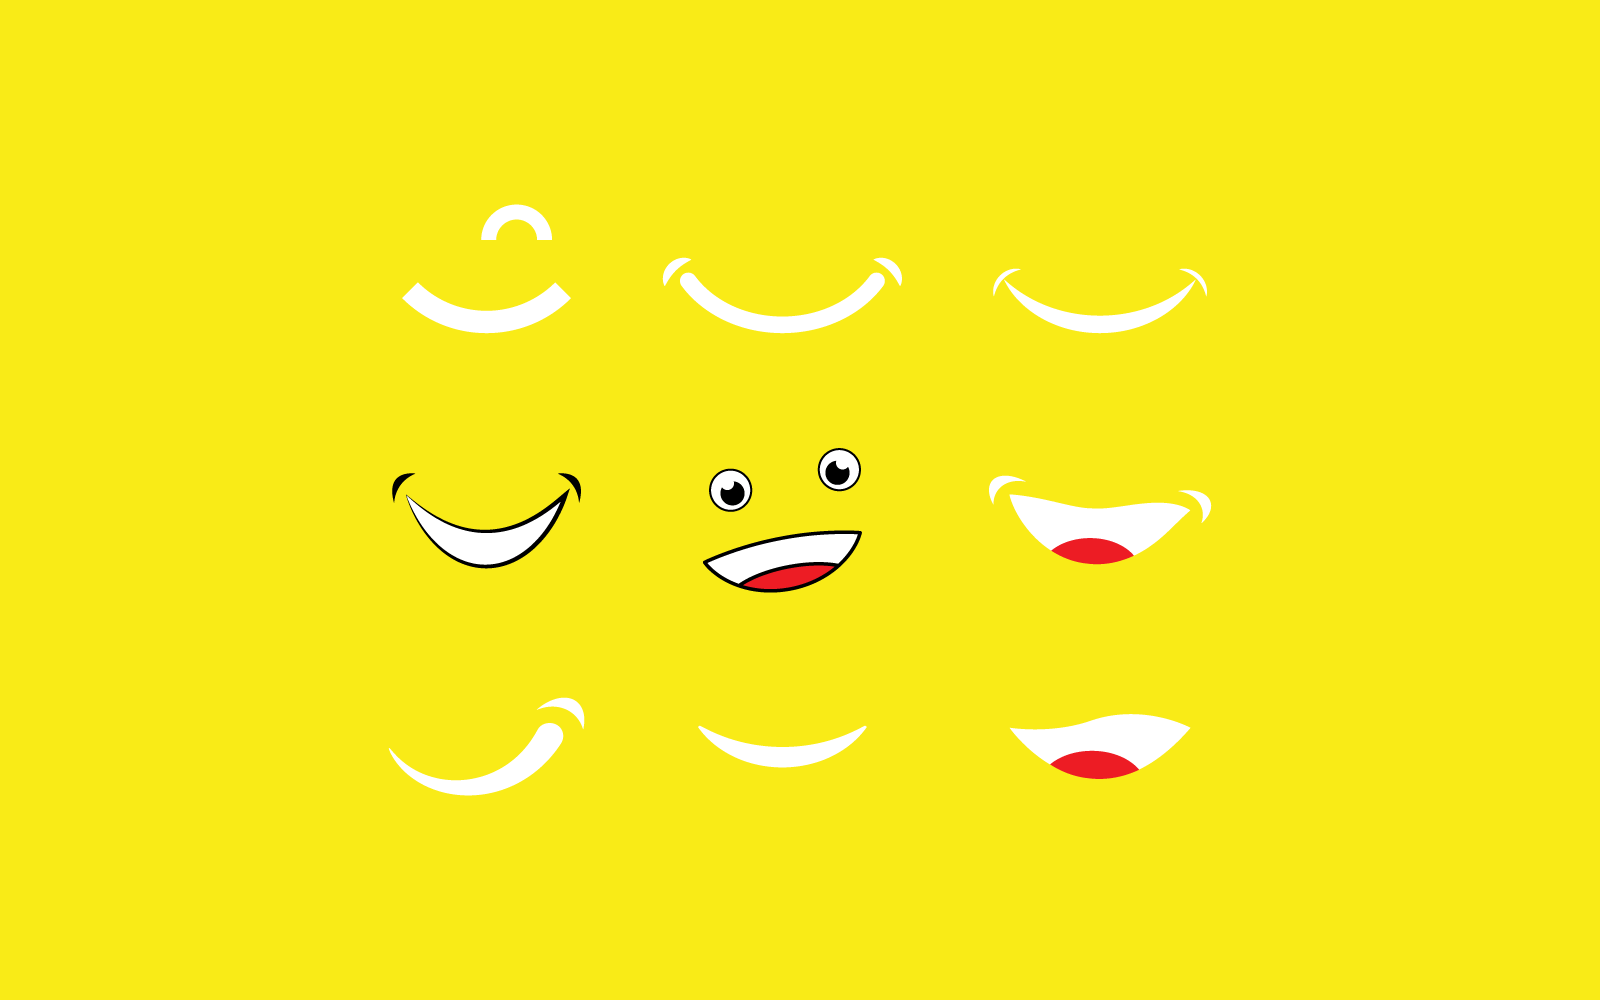 Улыбка счастливое лицо иллюстрации вектор плоский дизайн